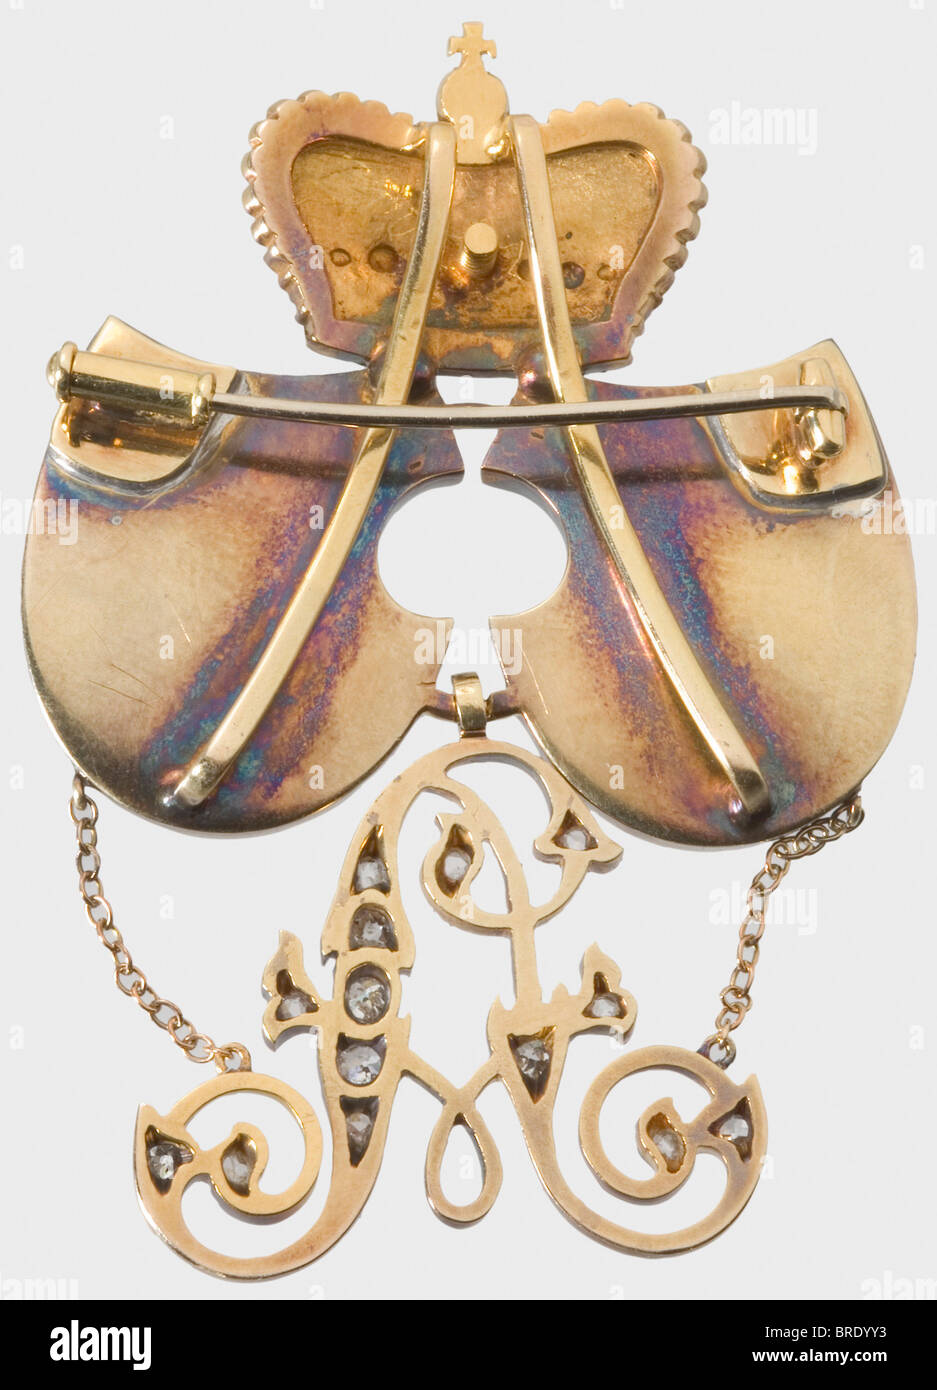 Principe Albrecht von Waldeck-Pyrmont (1841 - 1897), una presentazione  spilla 1886 - 1897 Oro e argento con smalto nero e rosso. Diamanti.  Coronato stemma matrimoniale con un monogramma allegato 'A' (à jour)